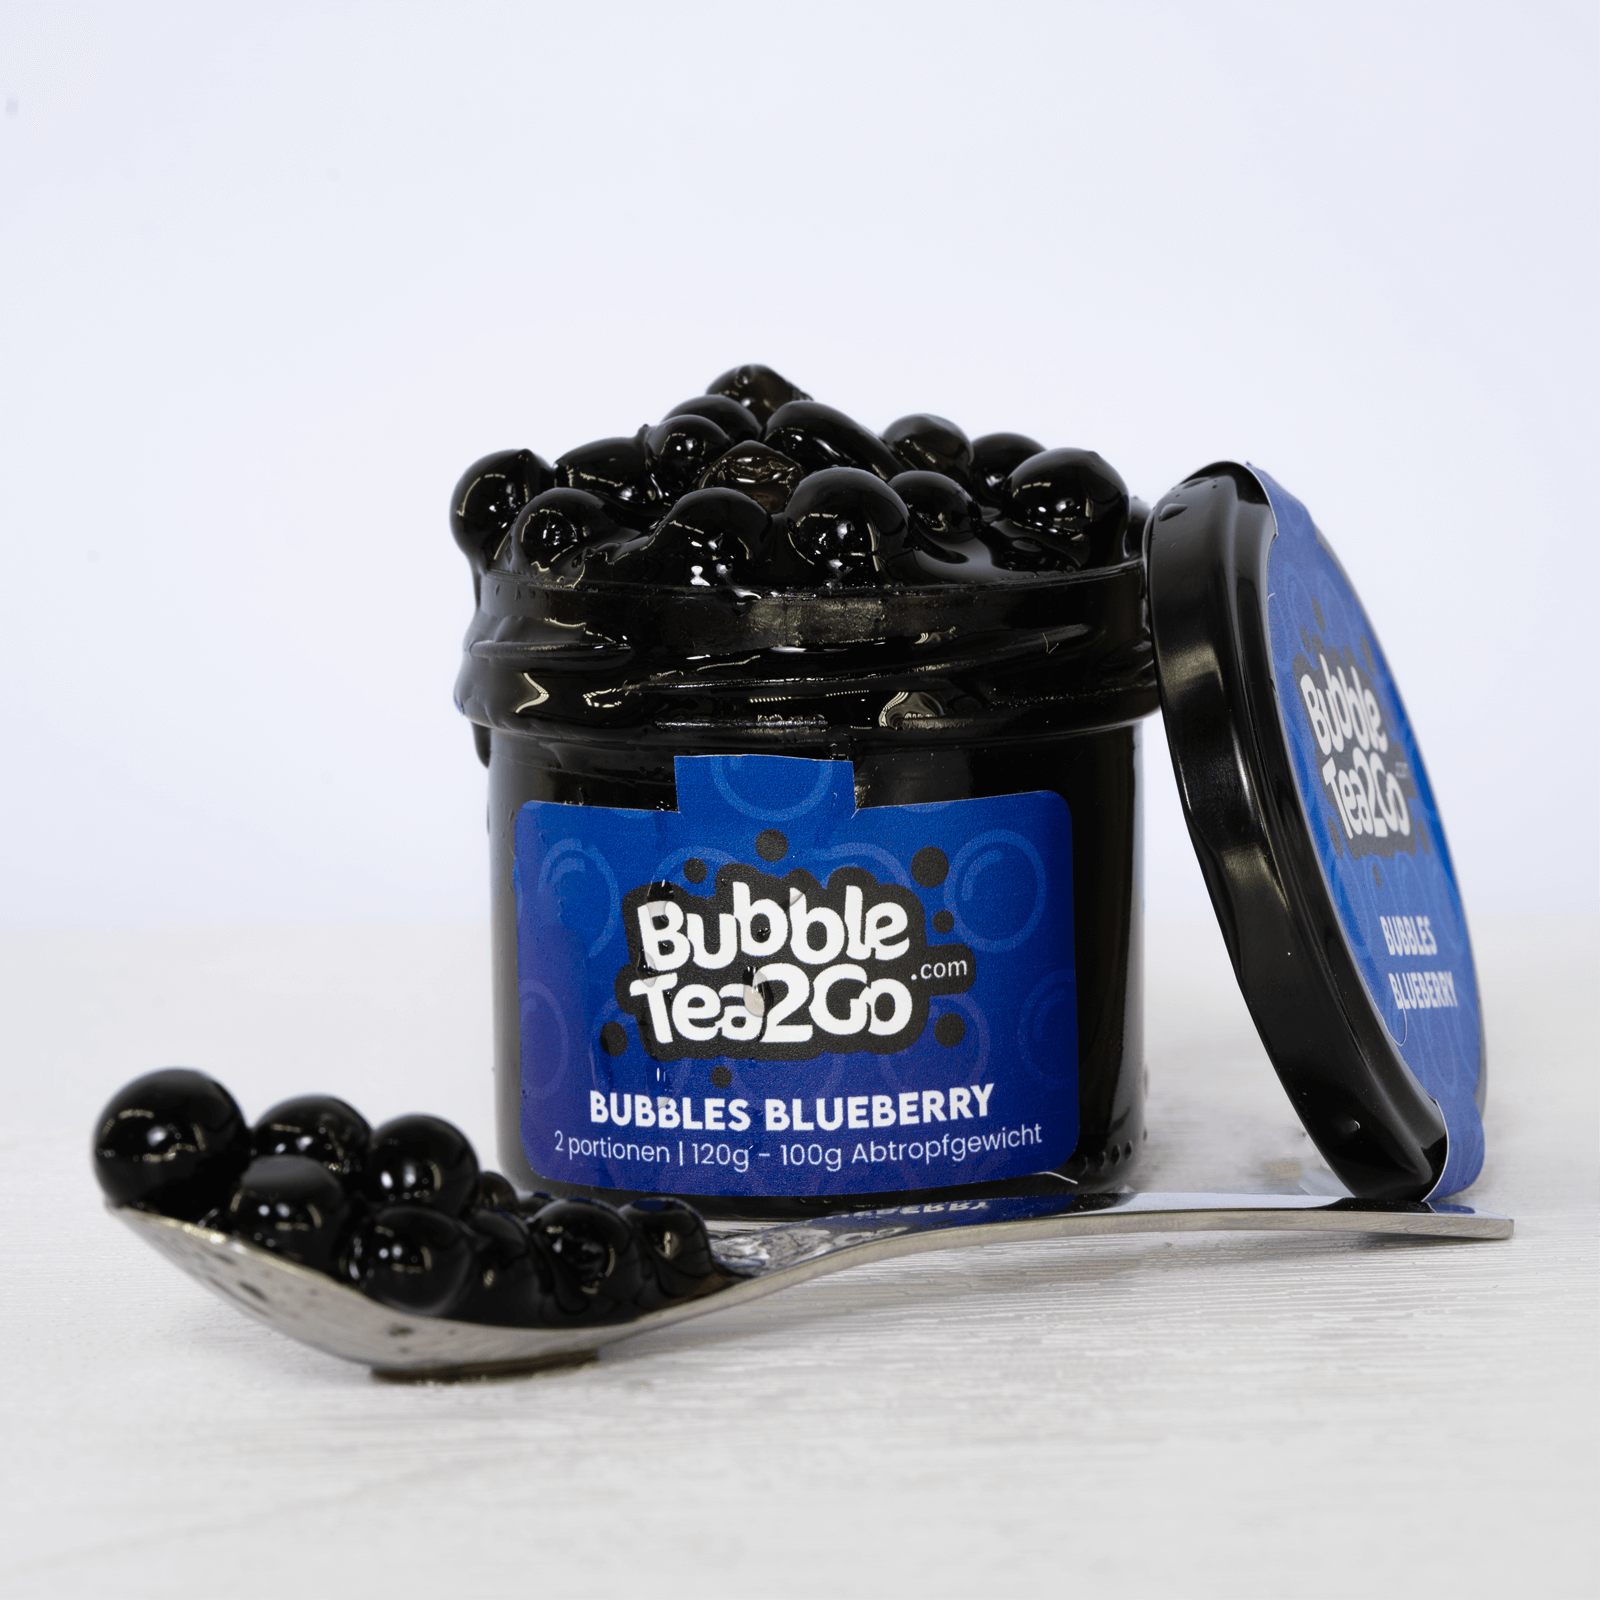 Bubbles - Blueberry 2 servings (120g)